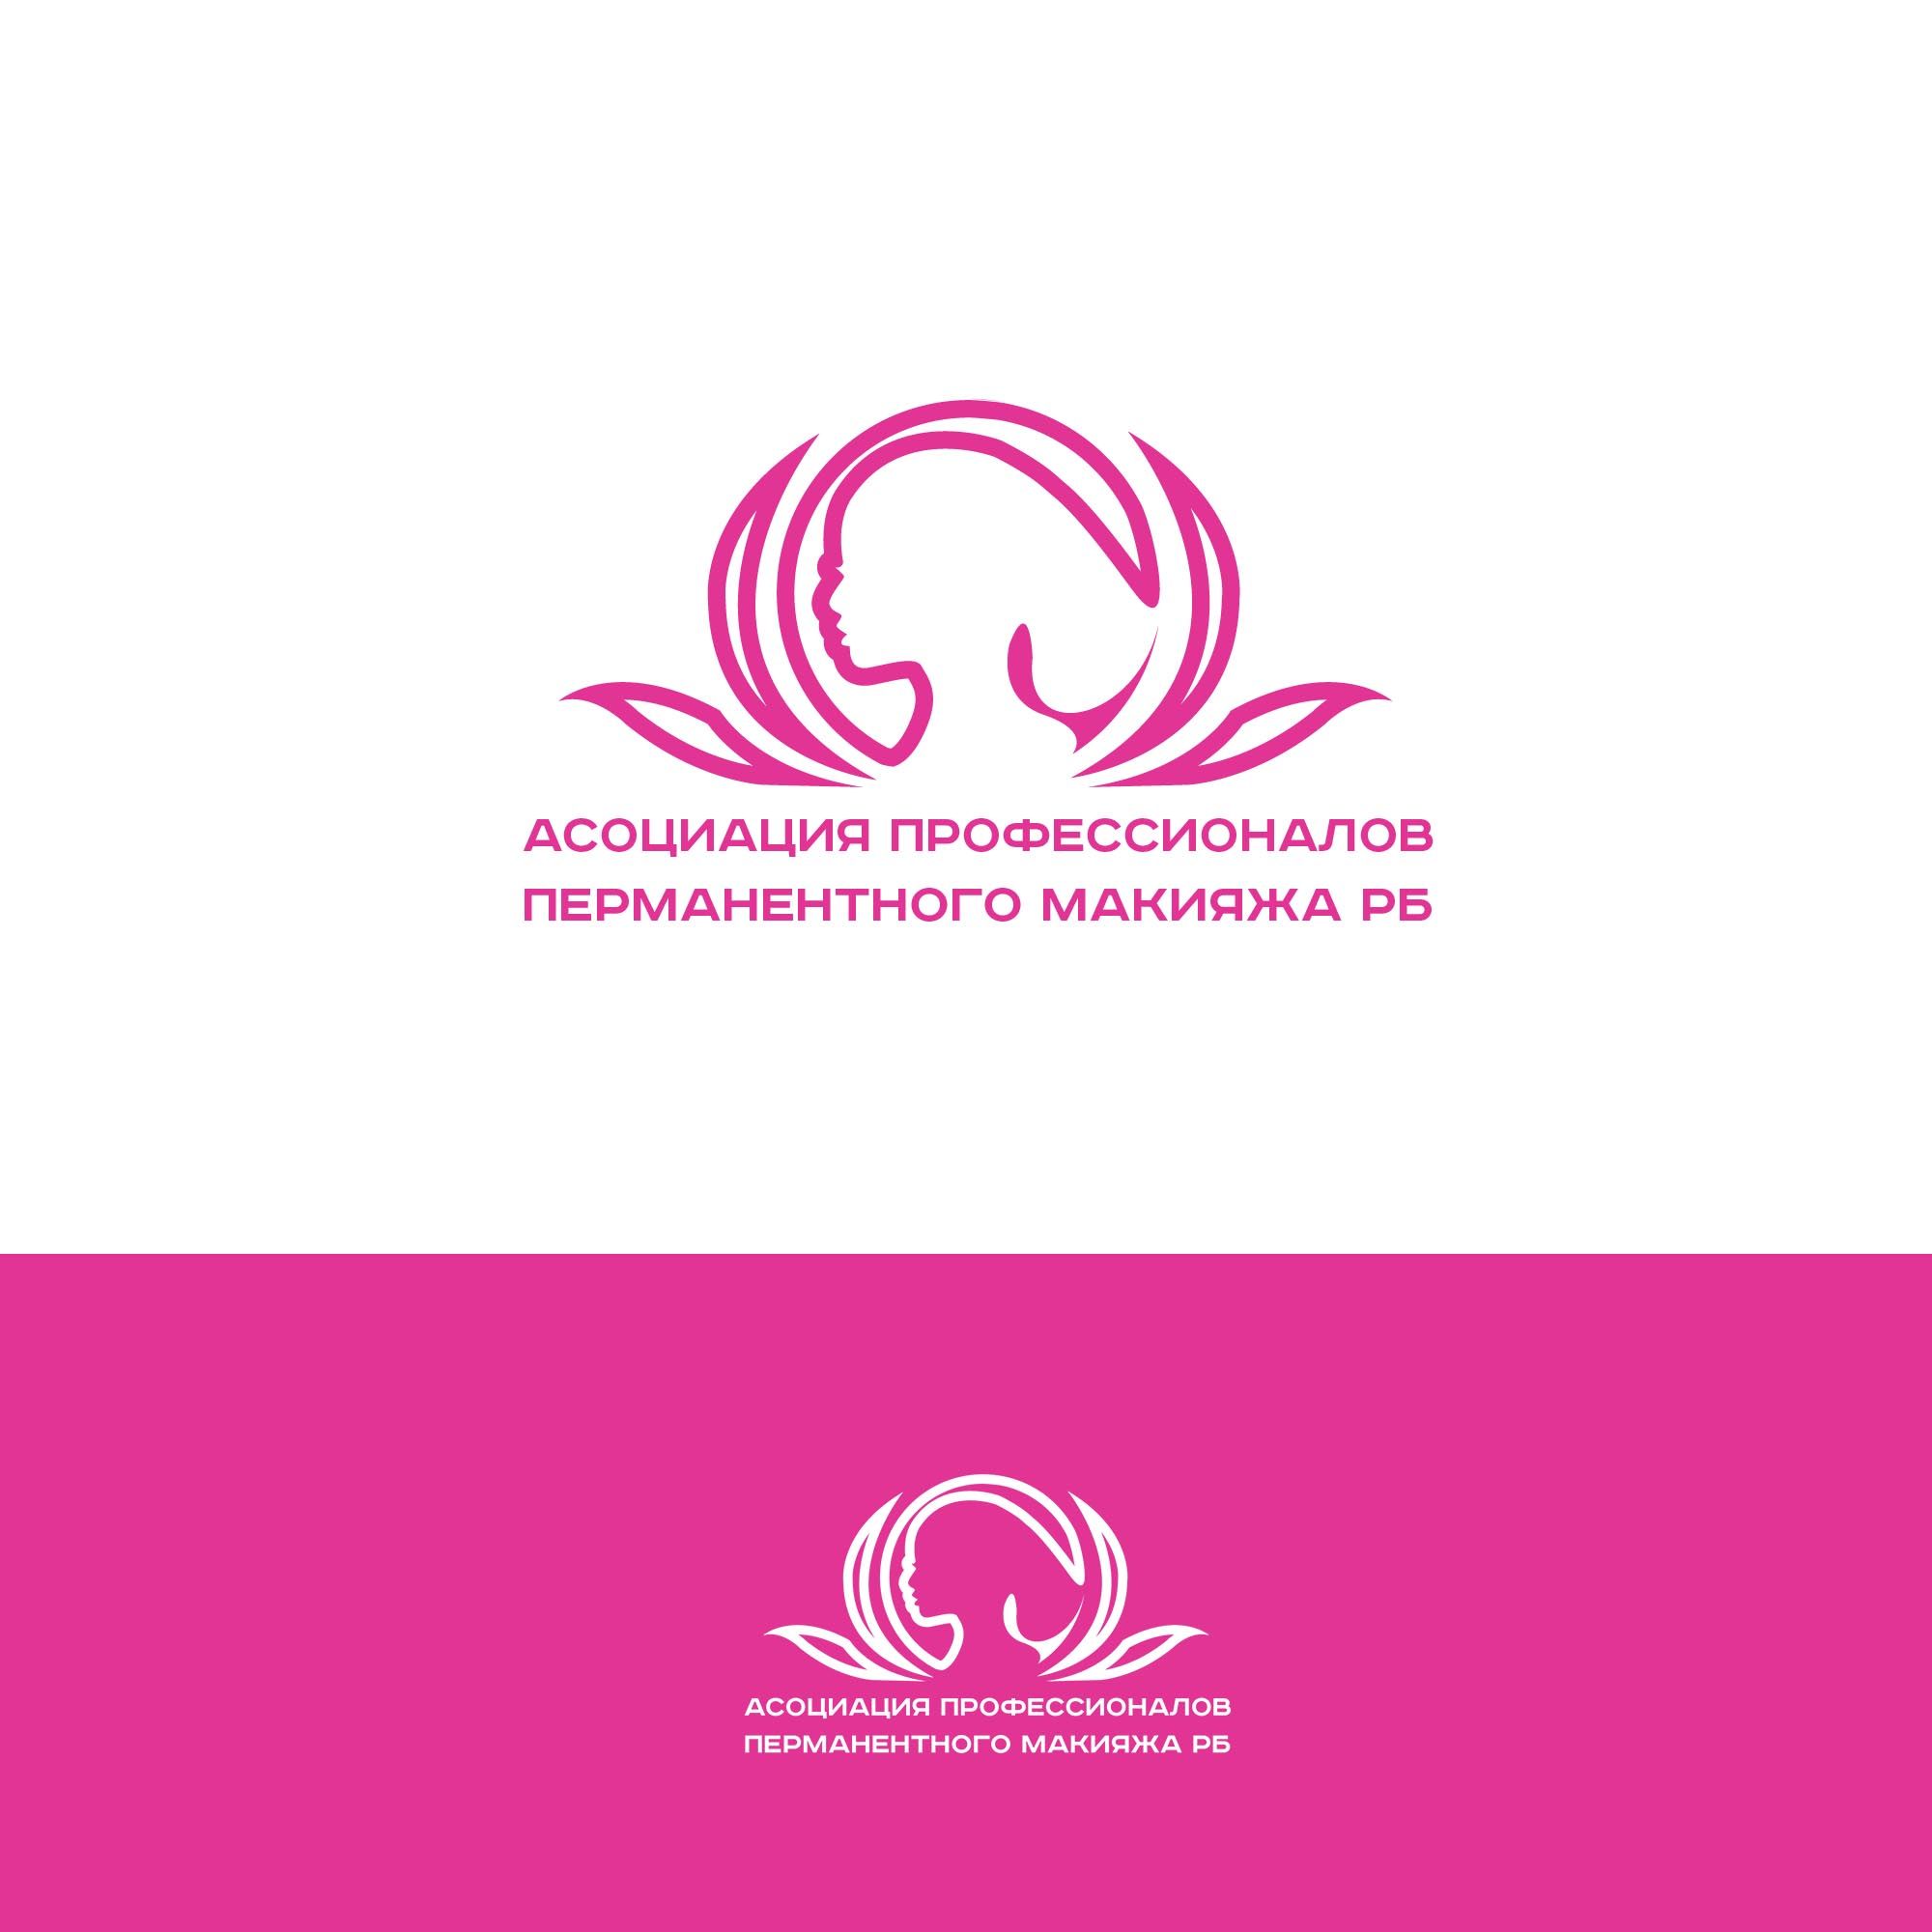 Лого и фирменный стиль для Асоциация профессионалов перманентного макияжа РБ - дизайнер SmolinDenis